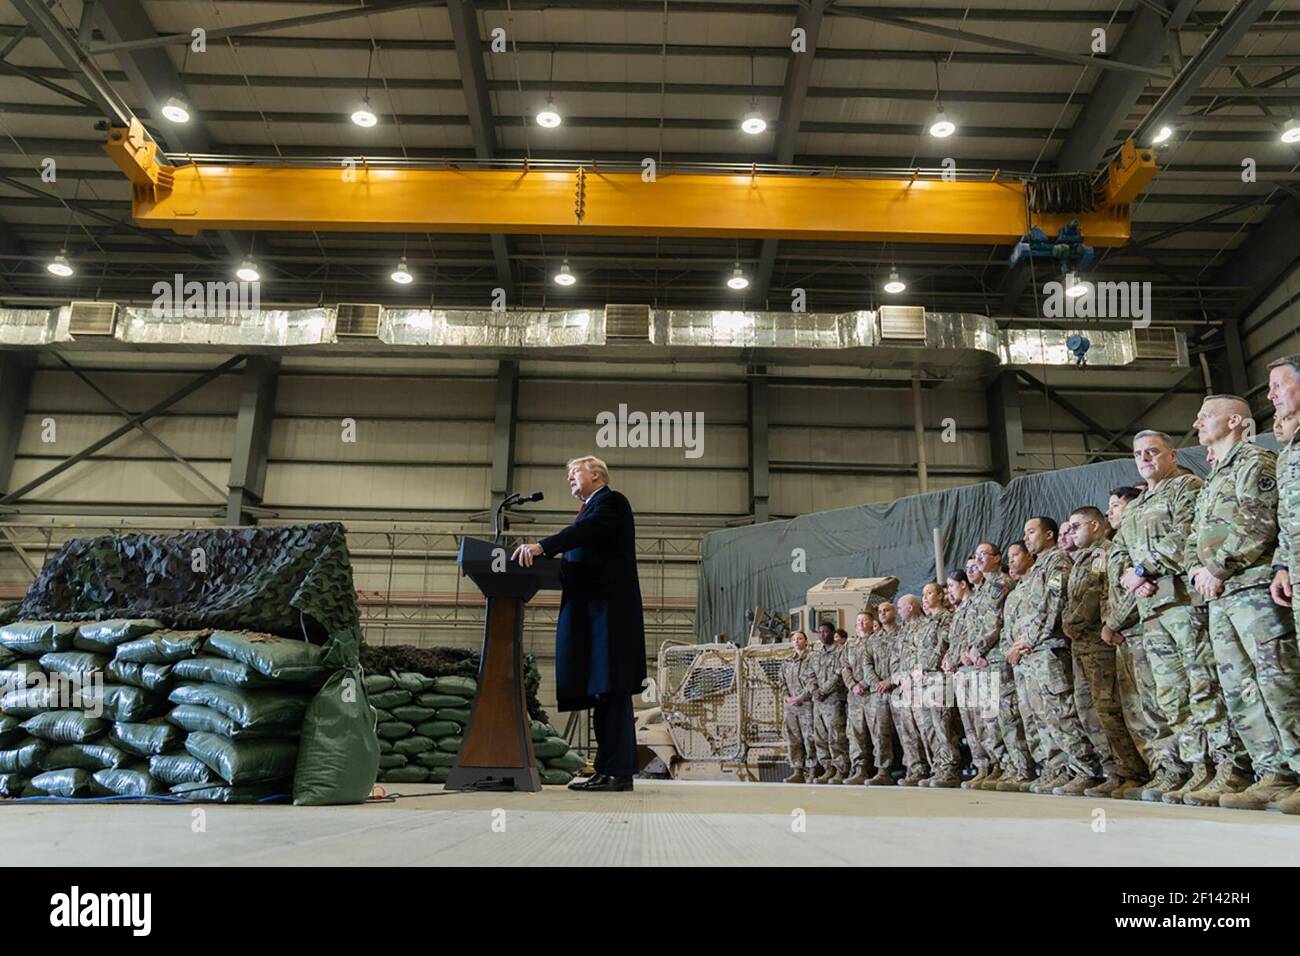 El presidente Donald Trump pronunció sus palabras ante las tropas estadounidenses el jueves 28 2019 de noviembre en Bagram Airfield Afganistán. Foto de stock